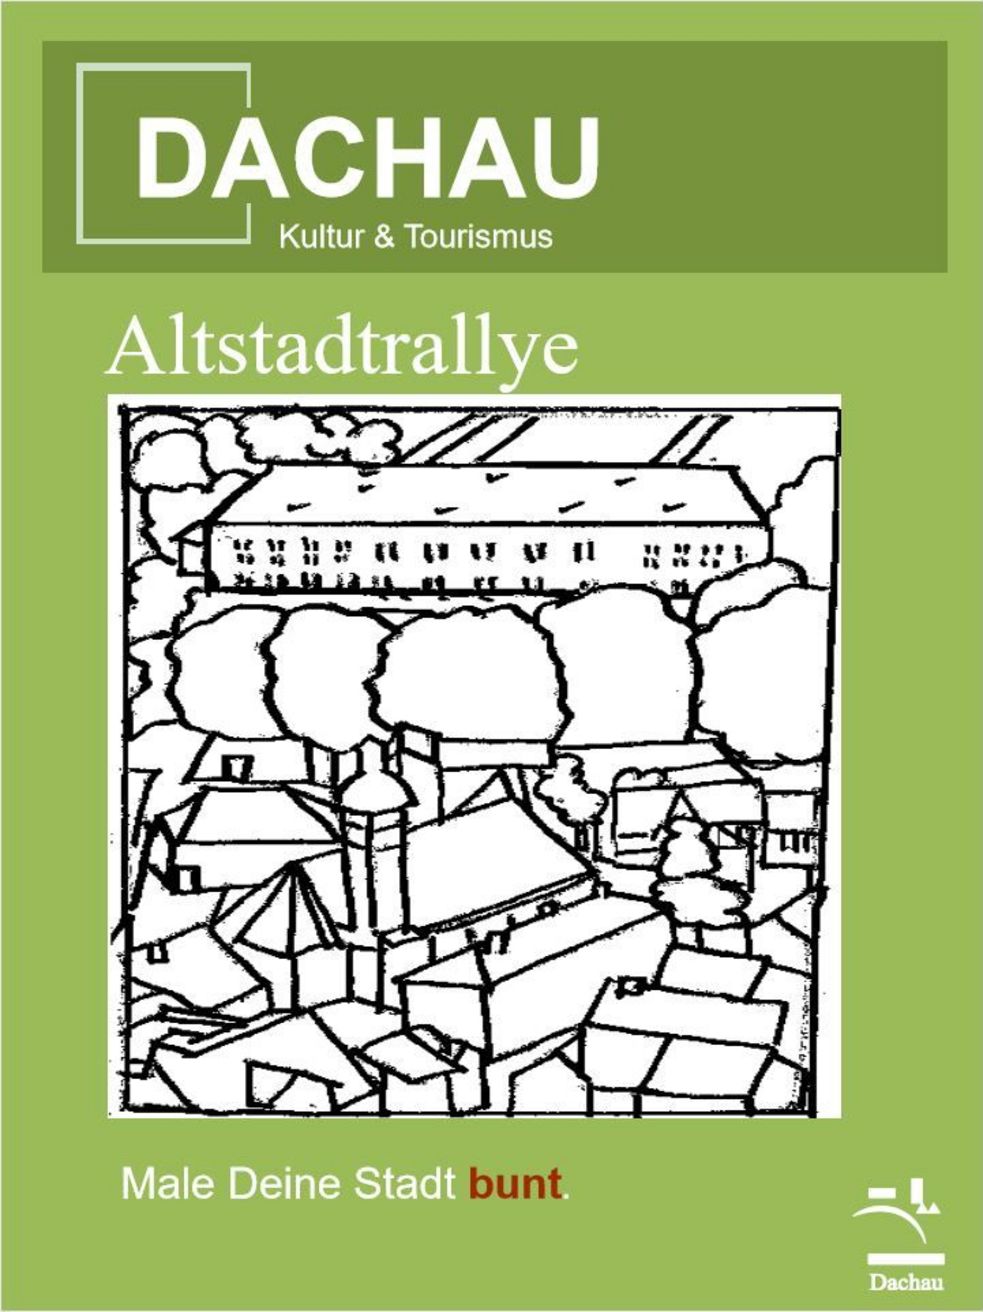 Titelblatt Altstadtrallye von Dachau Kultur und Tourismus mit schwarz weiß Skizze der Altstadt darunter die Aufforderung Male deine Stadt bunt